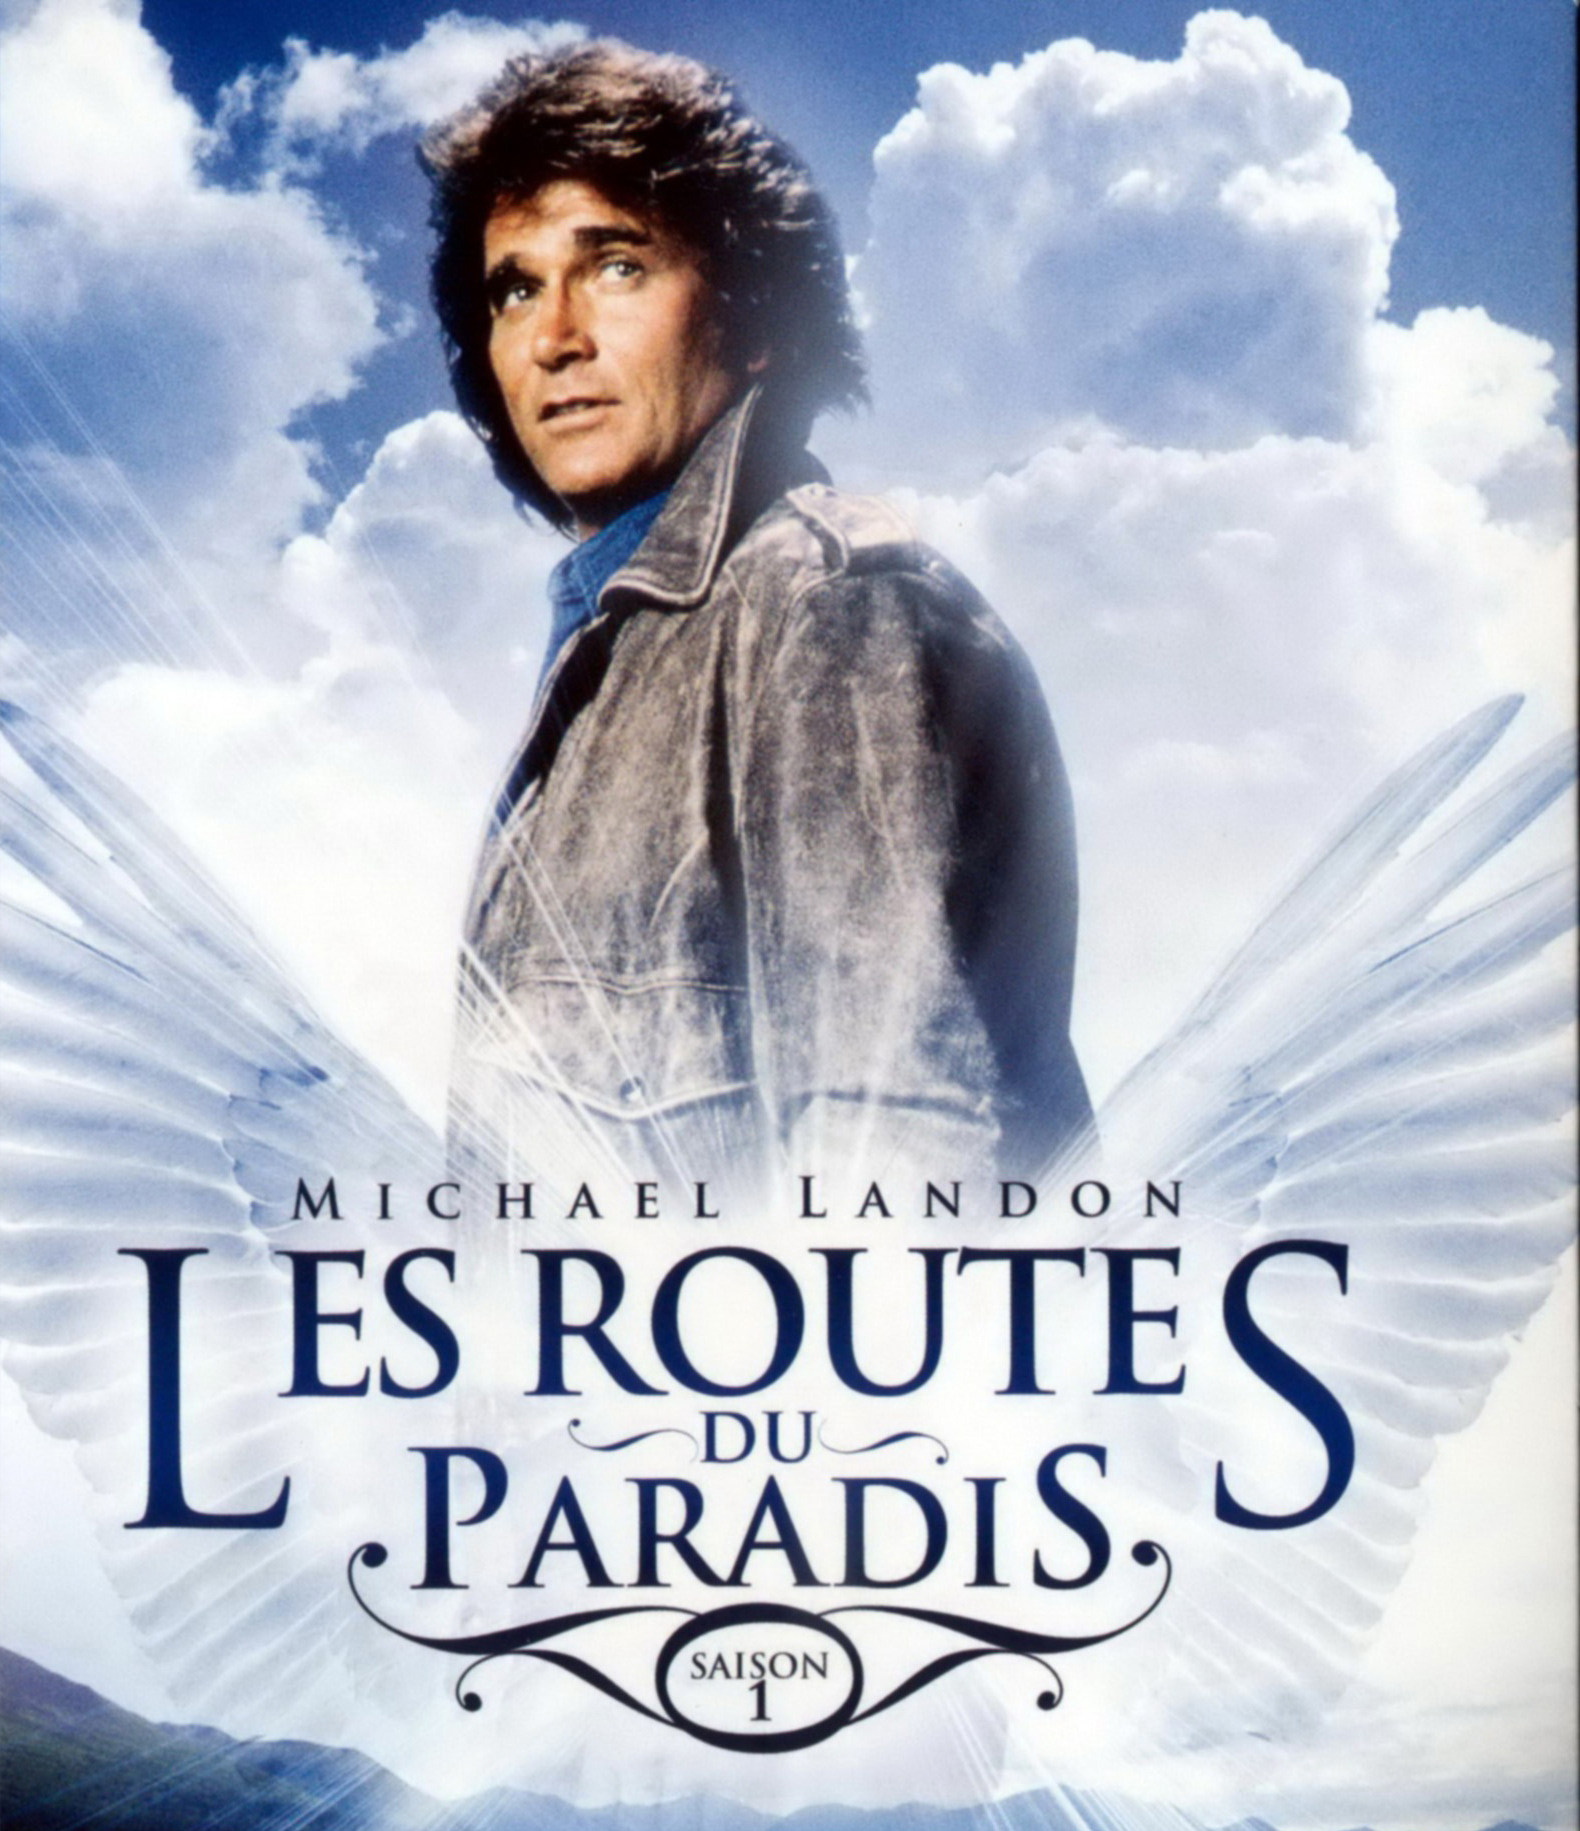 La série "Les routes du paradis" de Michael Landon